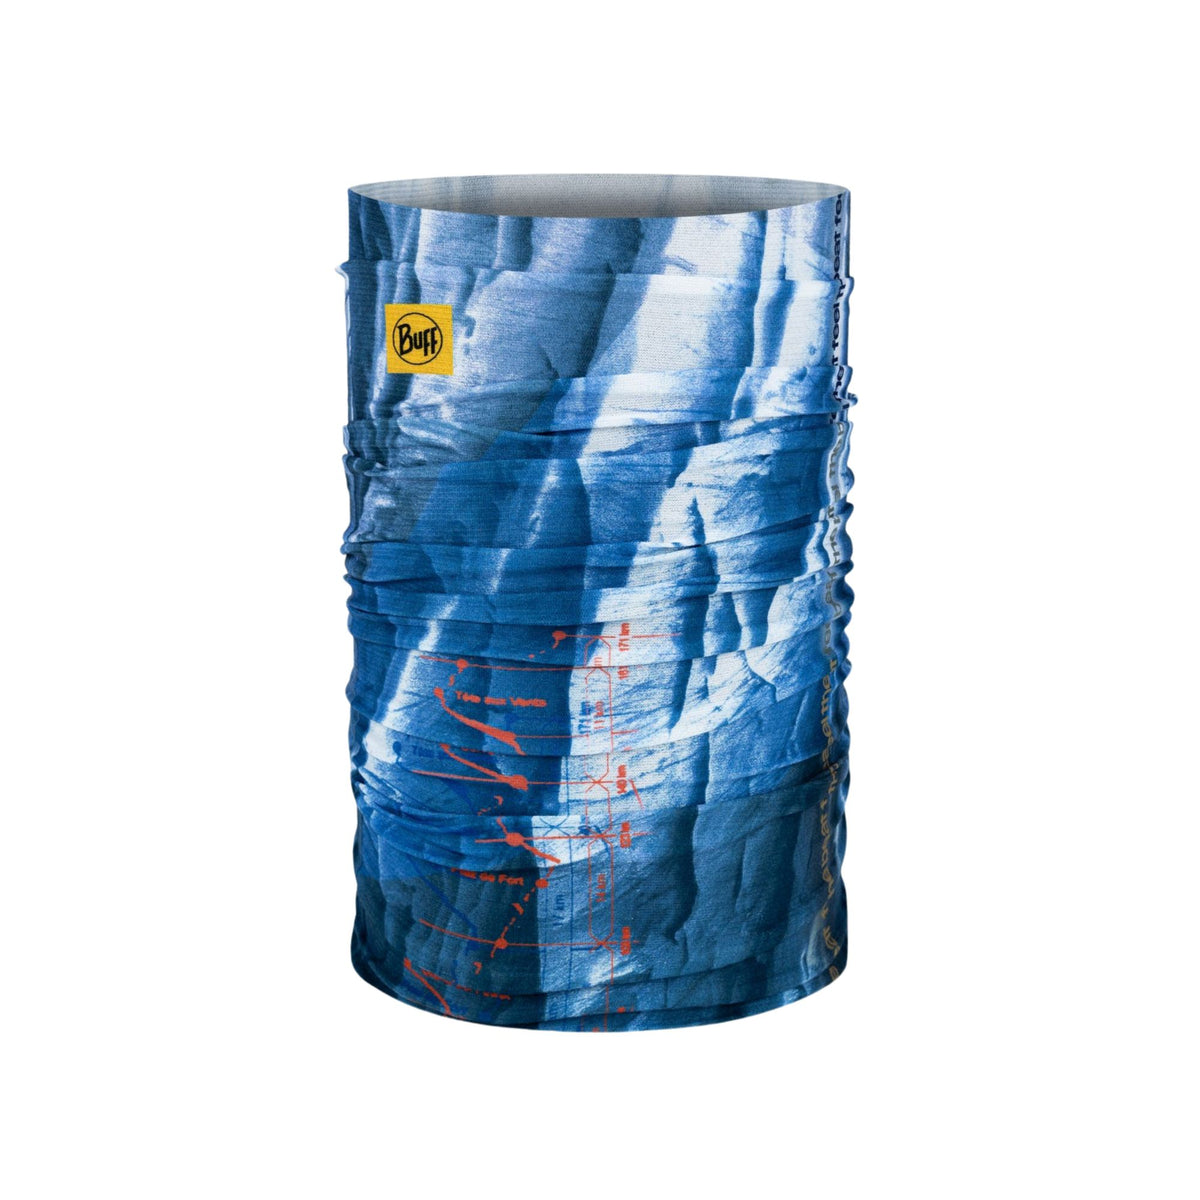 BUFF | COOLNET UV NECKWEAR - LOGO ARIUS BLUE - Scaldacollo con protezione solare